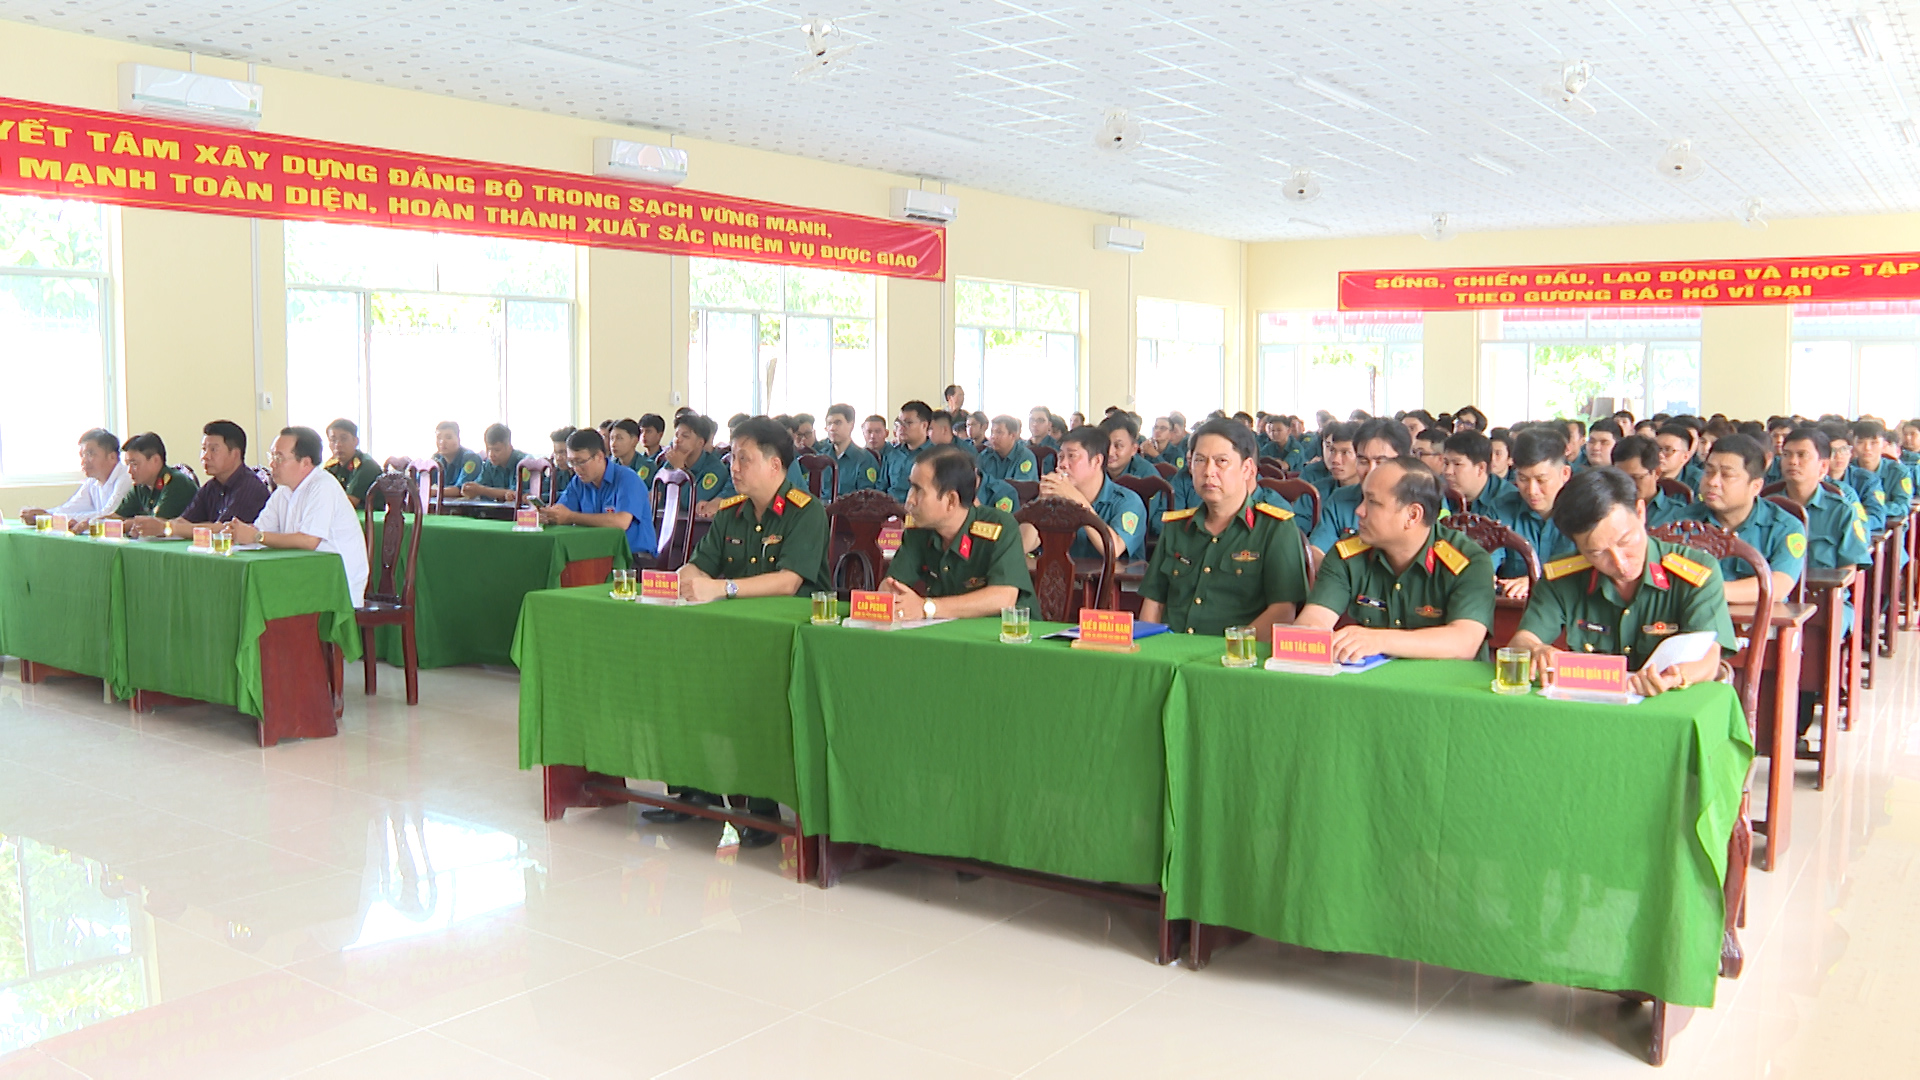 Hình 2: Đại biểu và lực lượng dân quân các phường trên địa bàn quận Ninh Kiều tham gia buổi khai mạc lớp huấn luyện